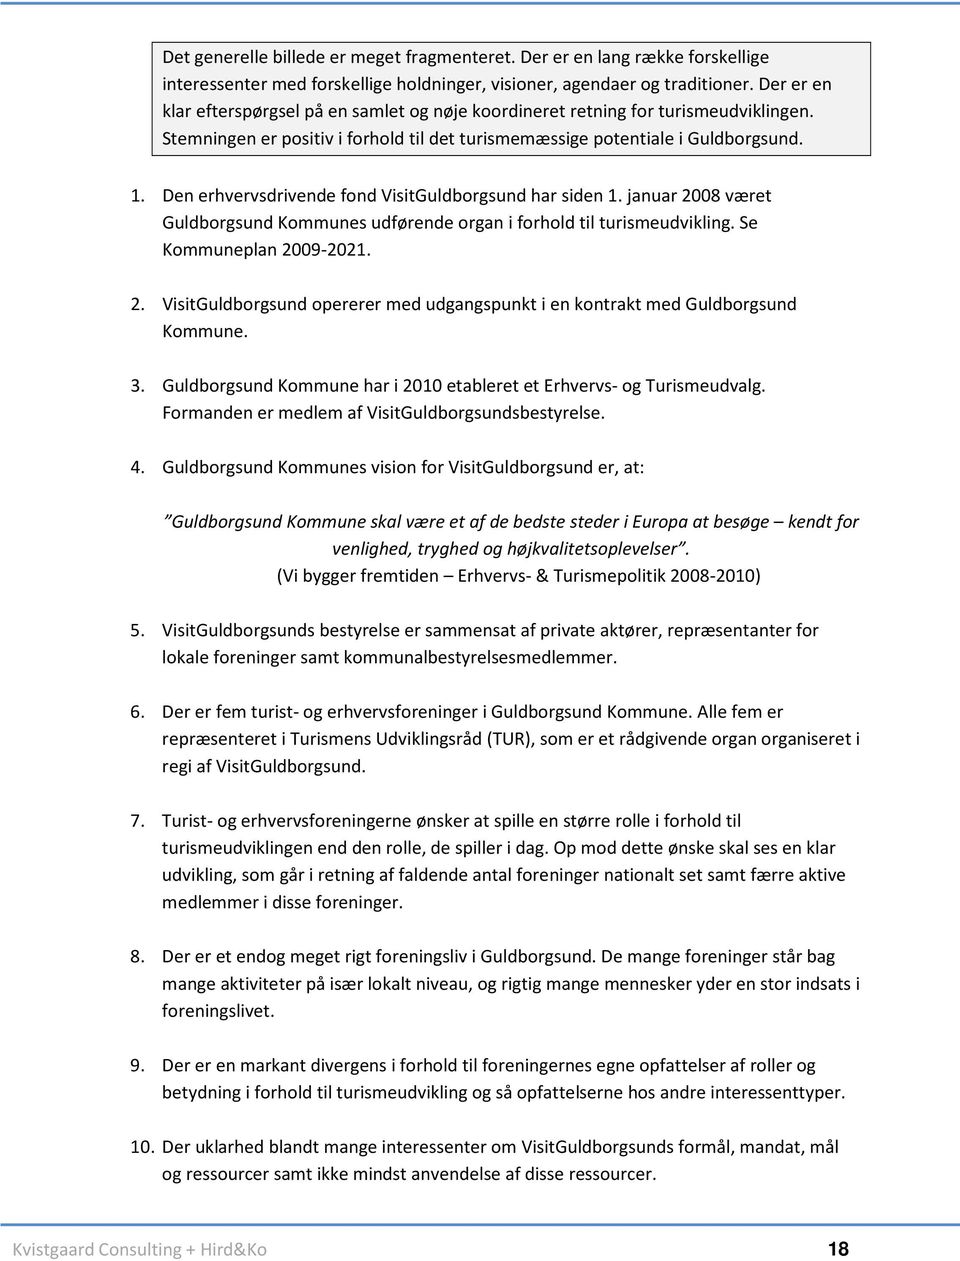 Den erhvervsdrivende fond VisitGuldborgsund har siden 1. januar 2008 været Guldborgsund Kommunes udførende organ i forhold til turismeudvikling. Se Kommuneplan 2009-2021. 2. VisitGuldborgsund opererer med udgangspunkt i en kontrakt med Guldborgsund Kommune.